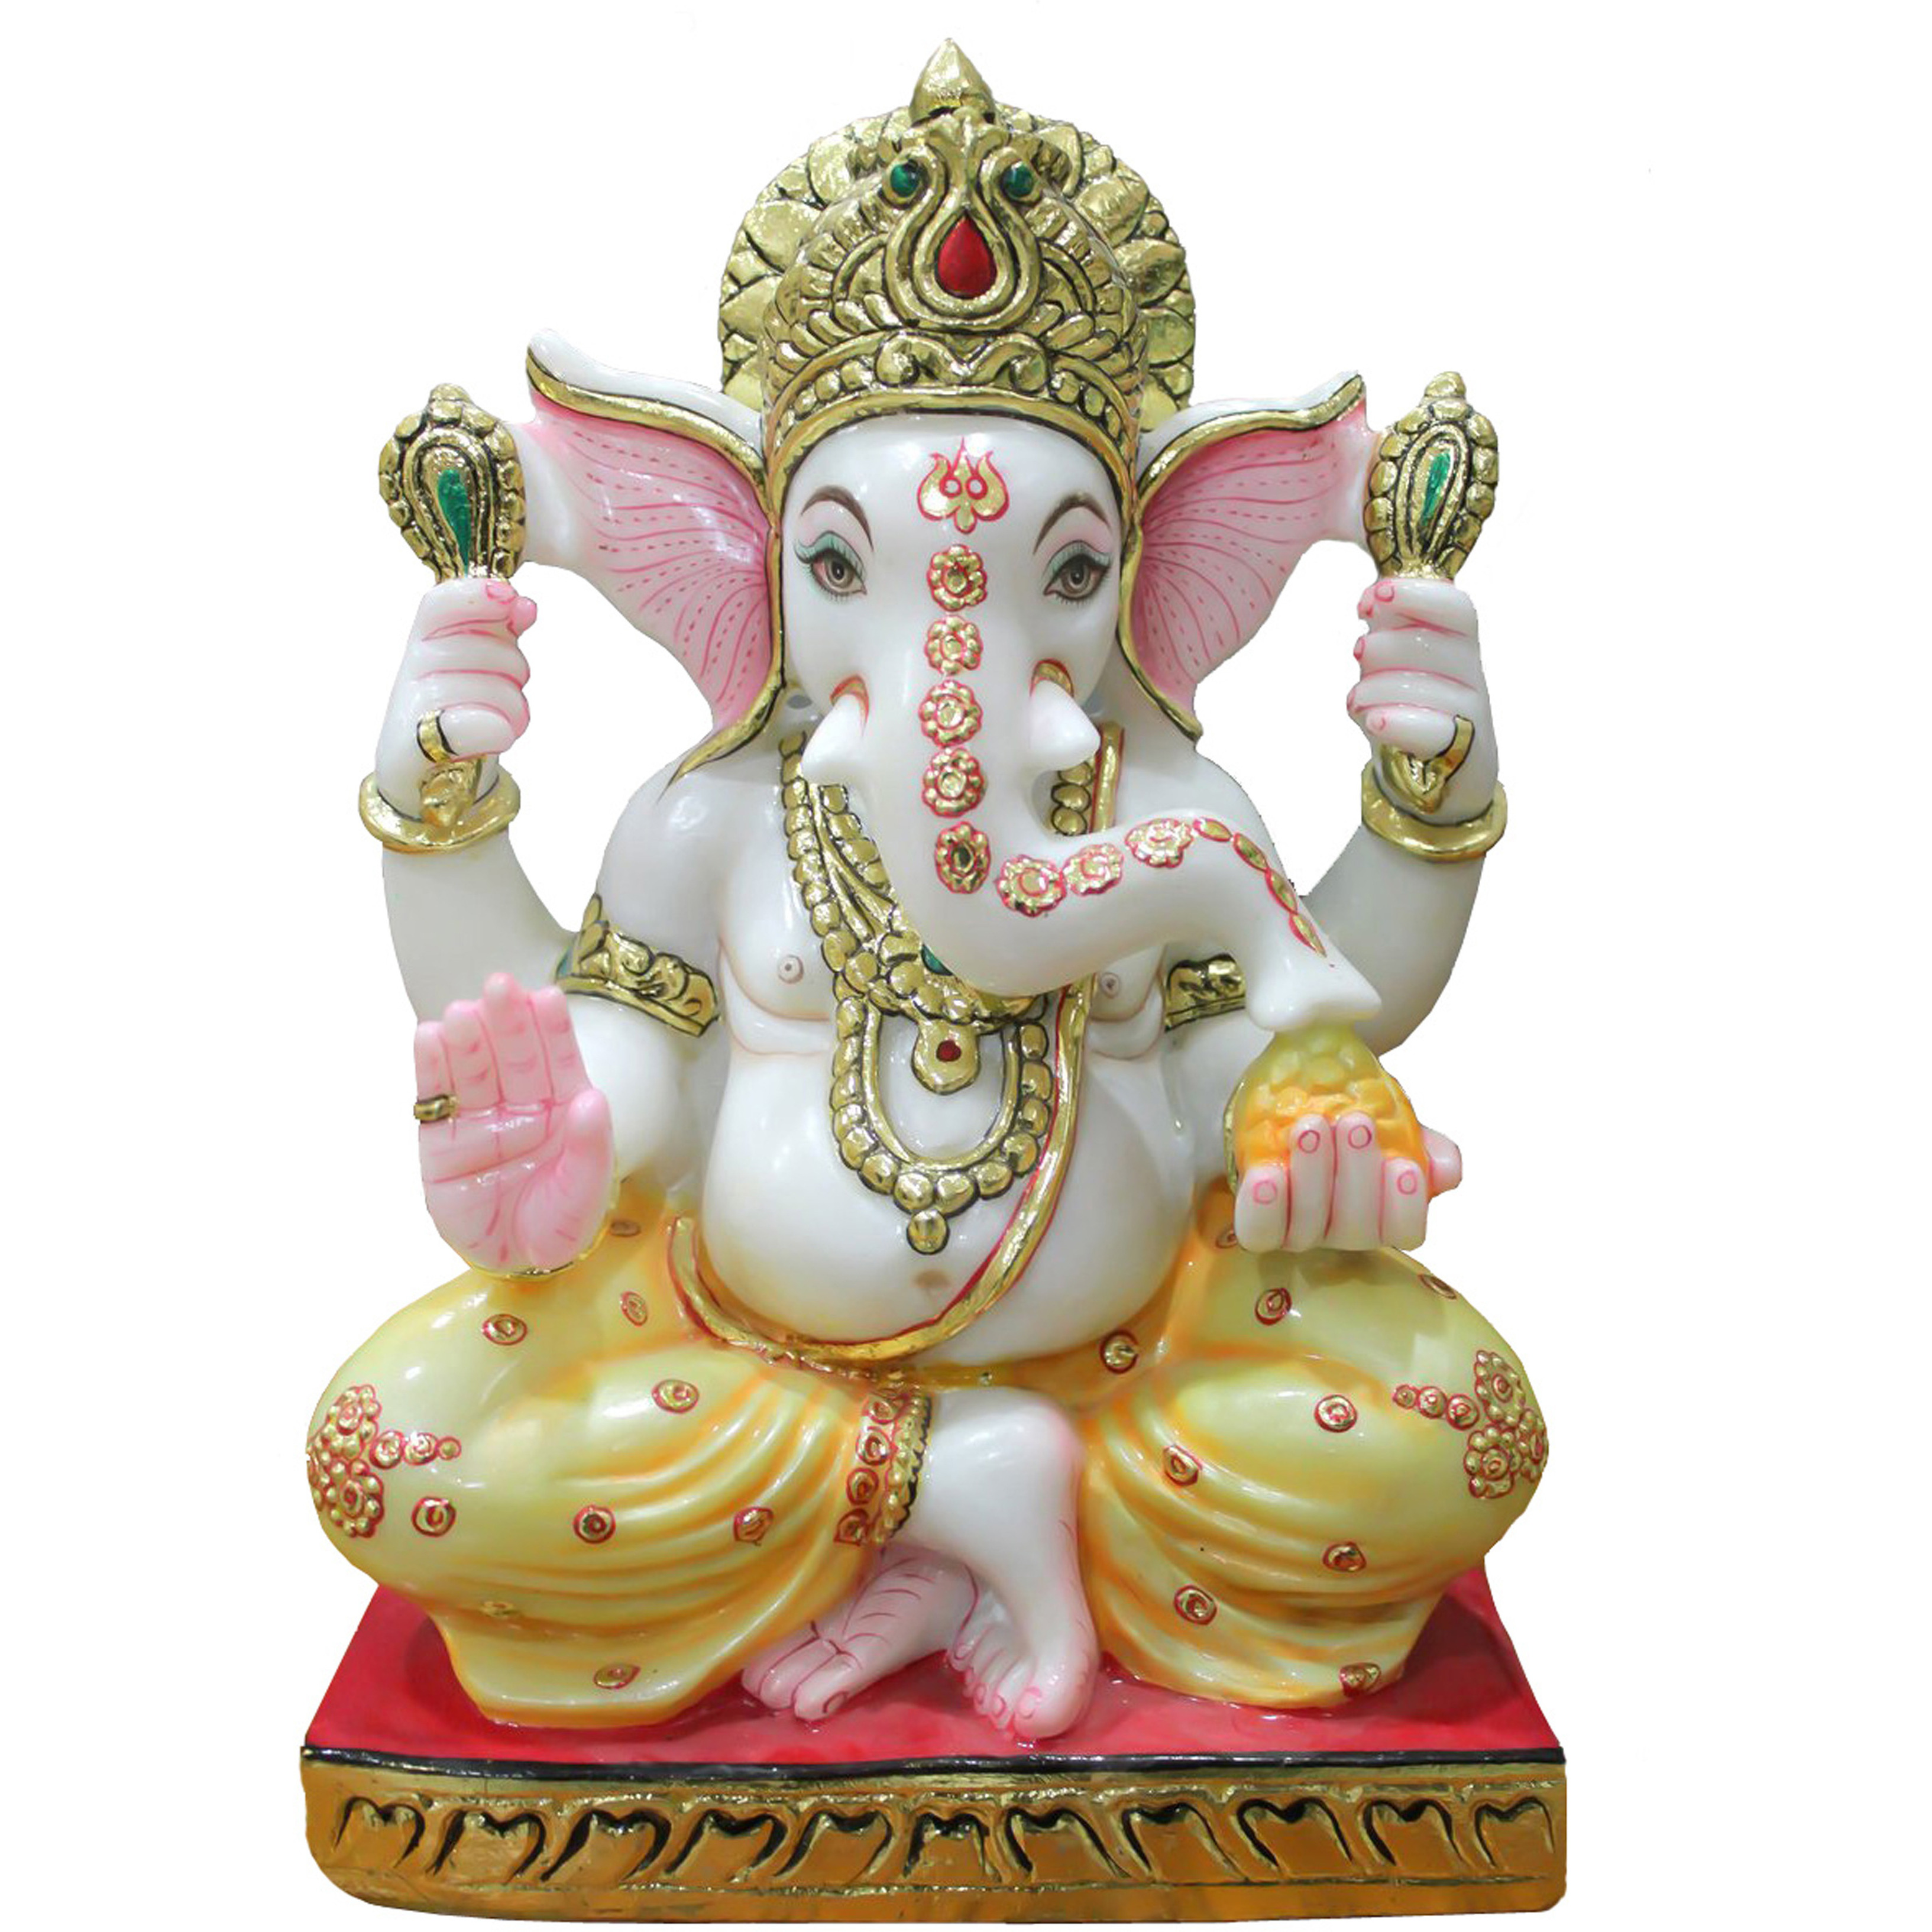 Buy Online White Marble Ganesha Statue Figurine Sculpture